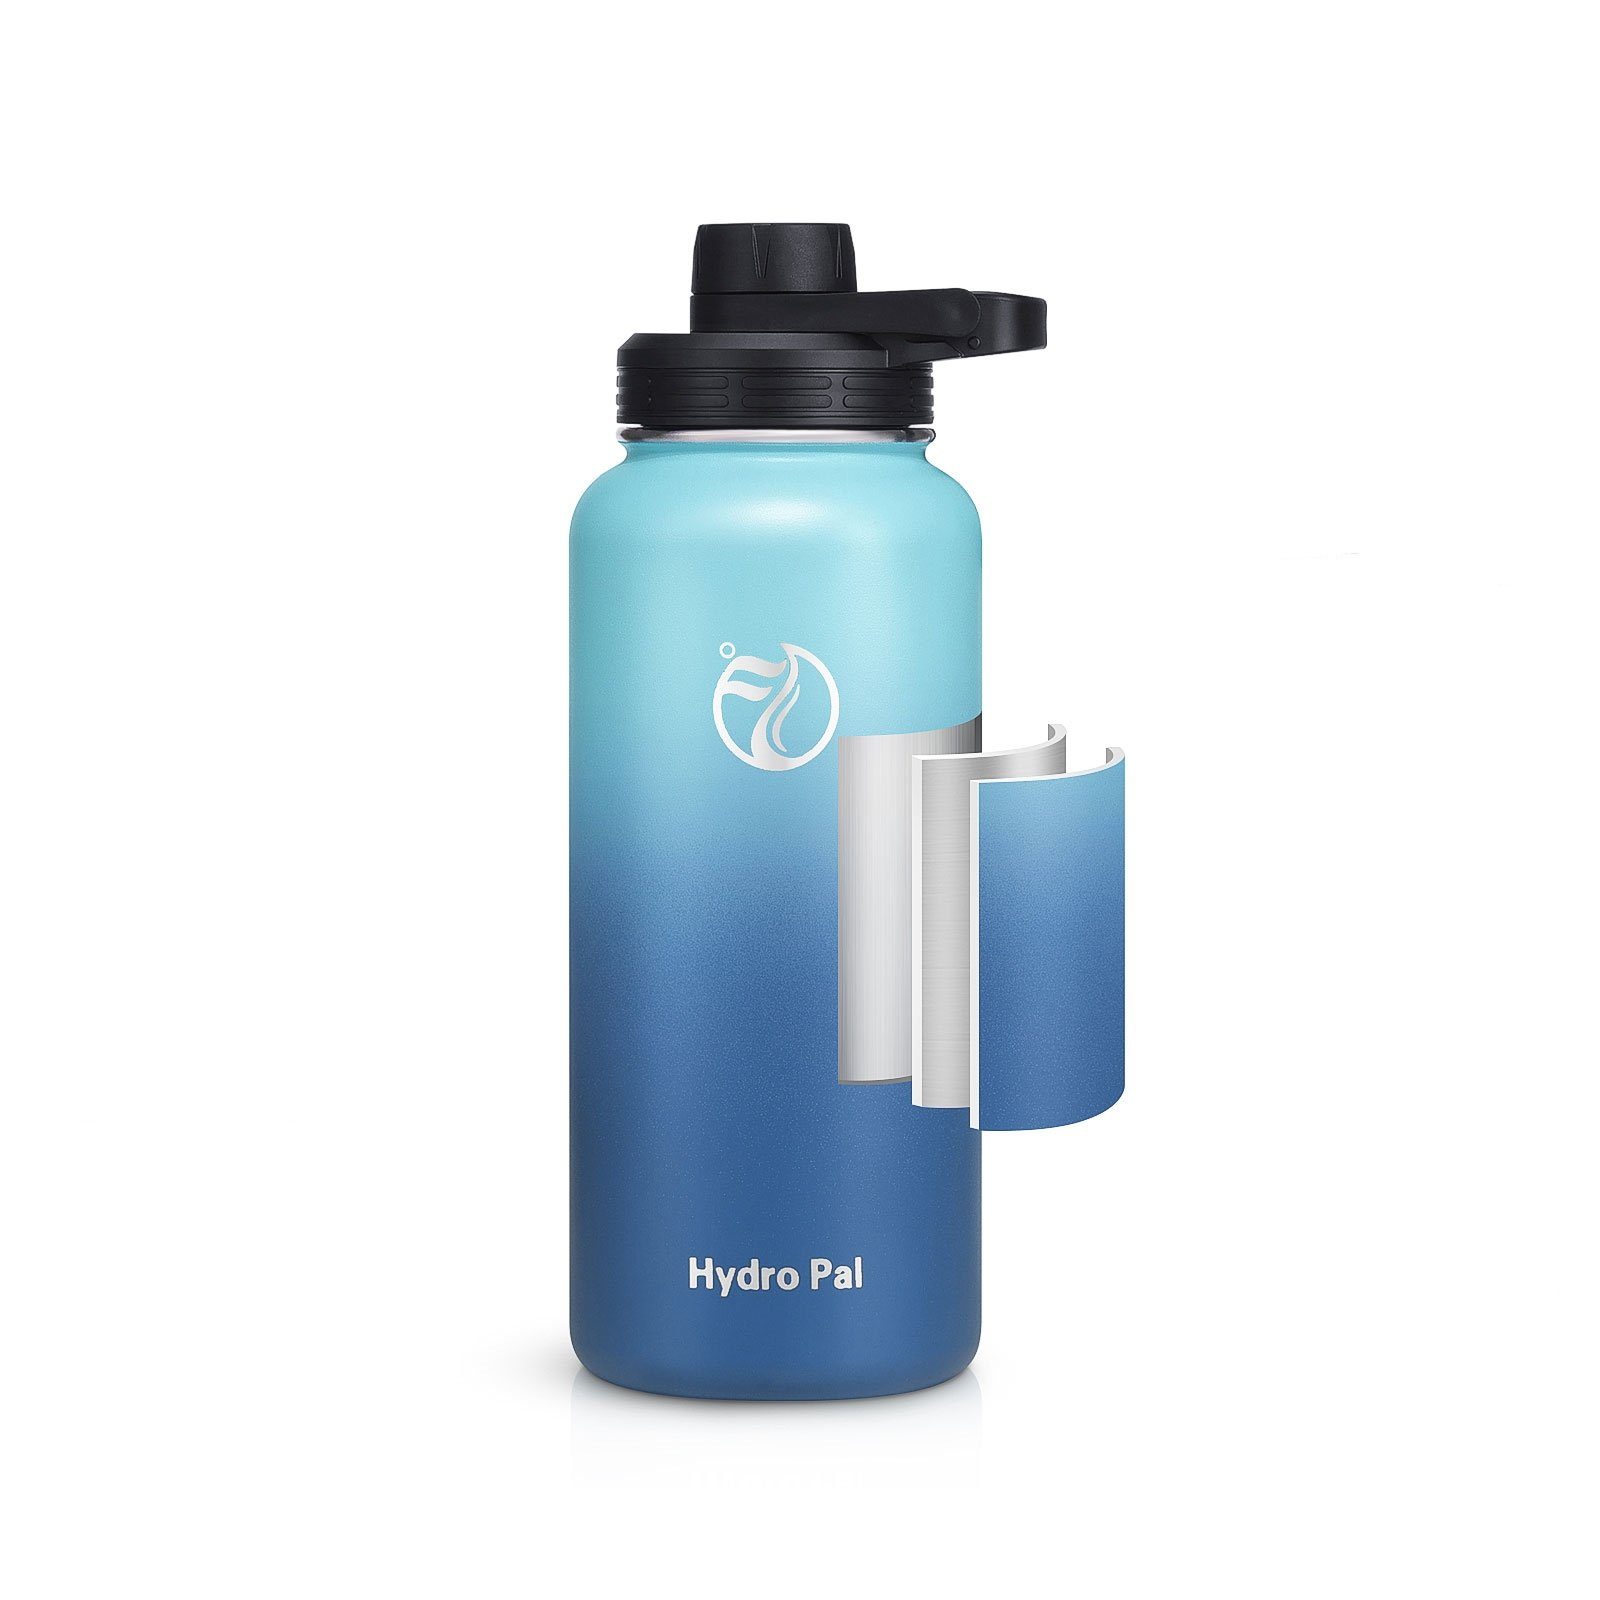 OKWISH Isolierflasche Thermosflasche Isolierte Trinkflasche Liter 2 1L Kohlensäure geeignet BPA-Frei 2 Wasserflasche Strohhalm Hellblau Edelstahl, Auslaufsicher Deckel 1